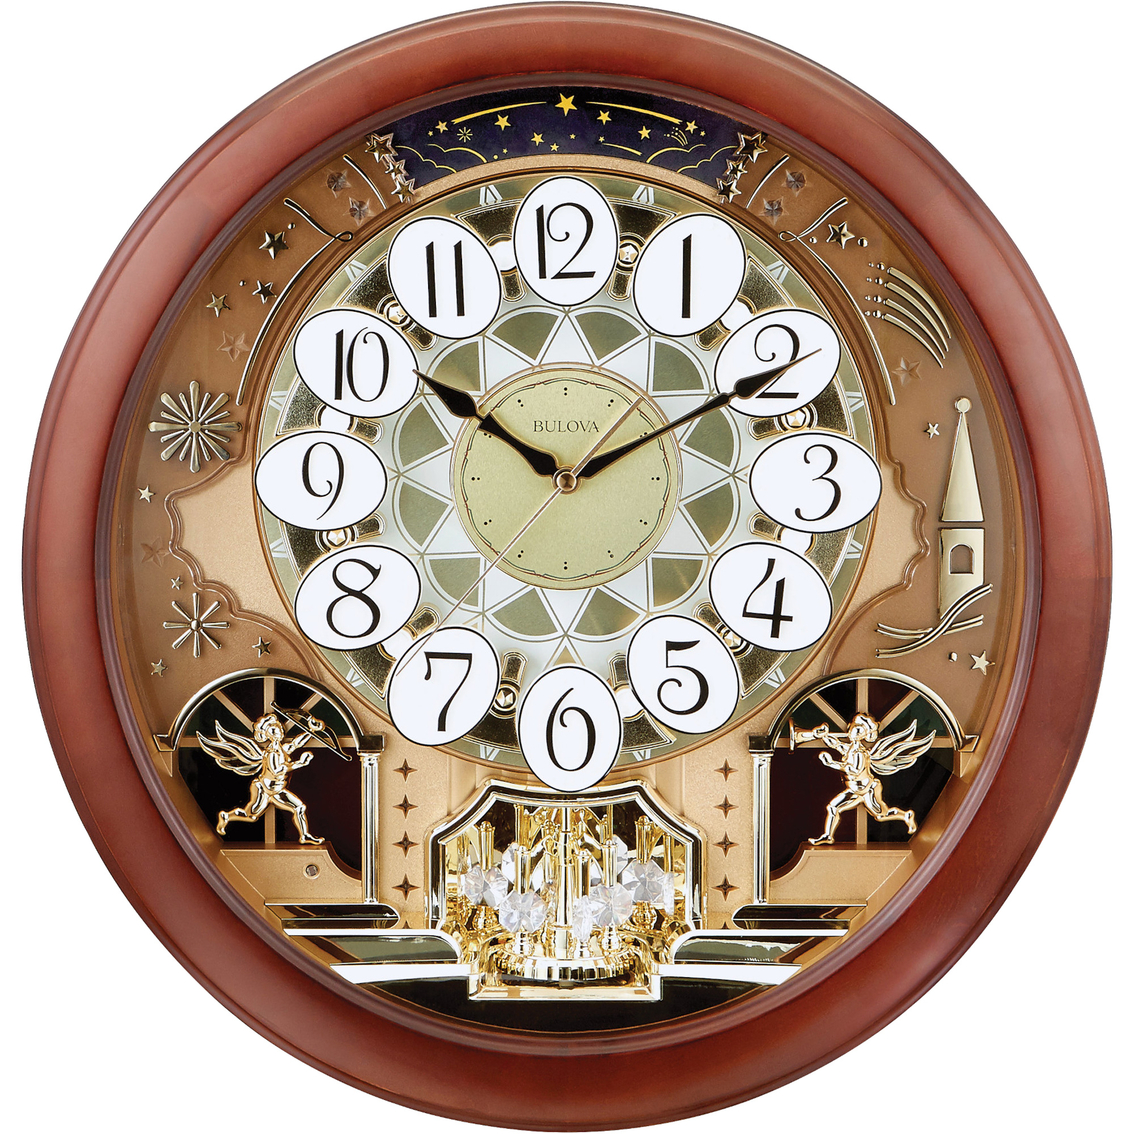 Bulova The Dancing Dial Clock C4901 - Image 1 of 2